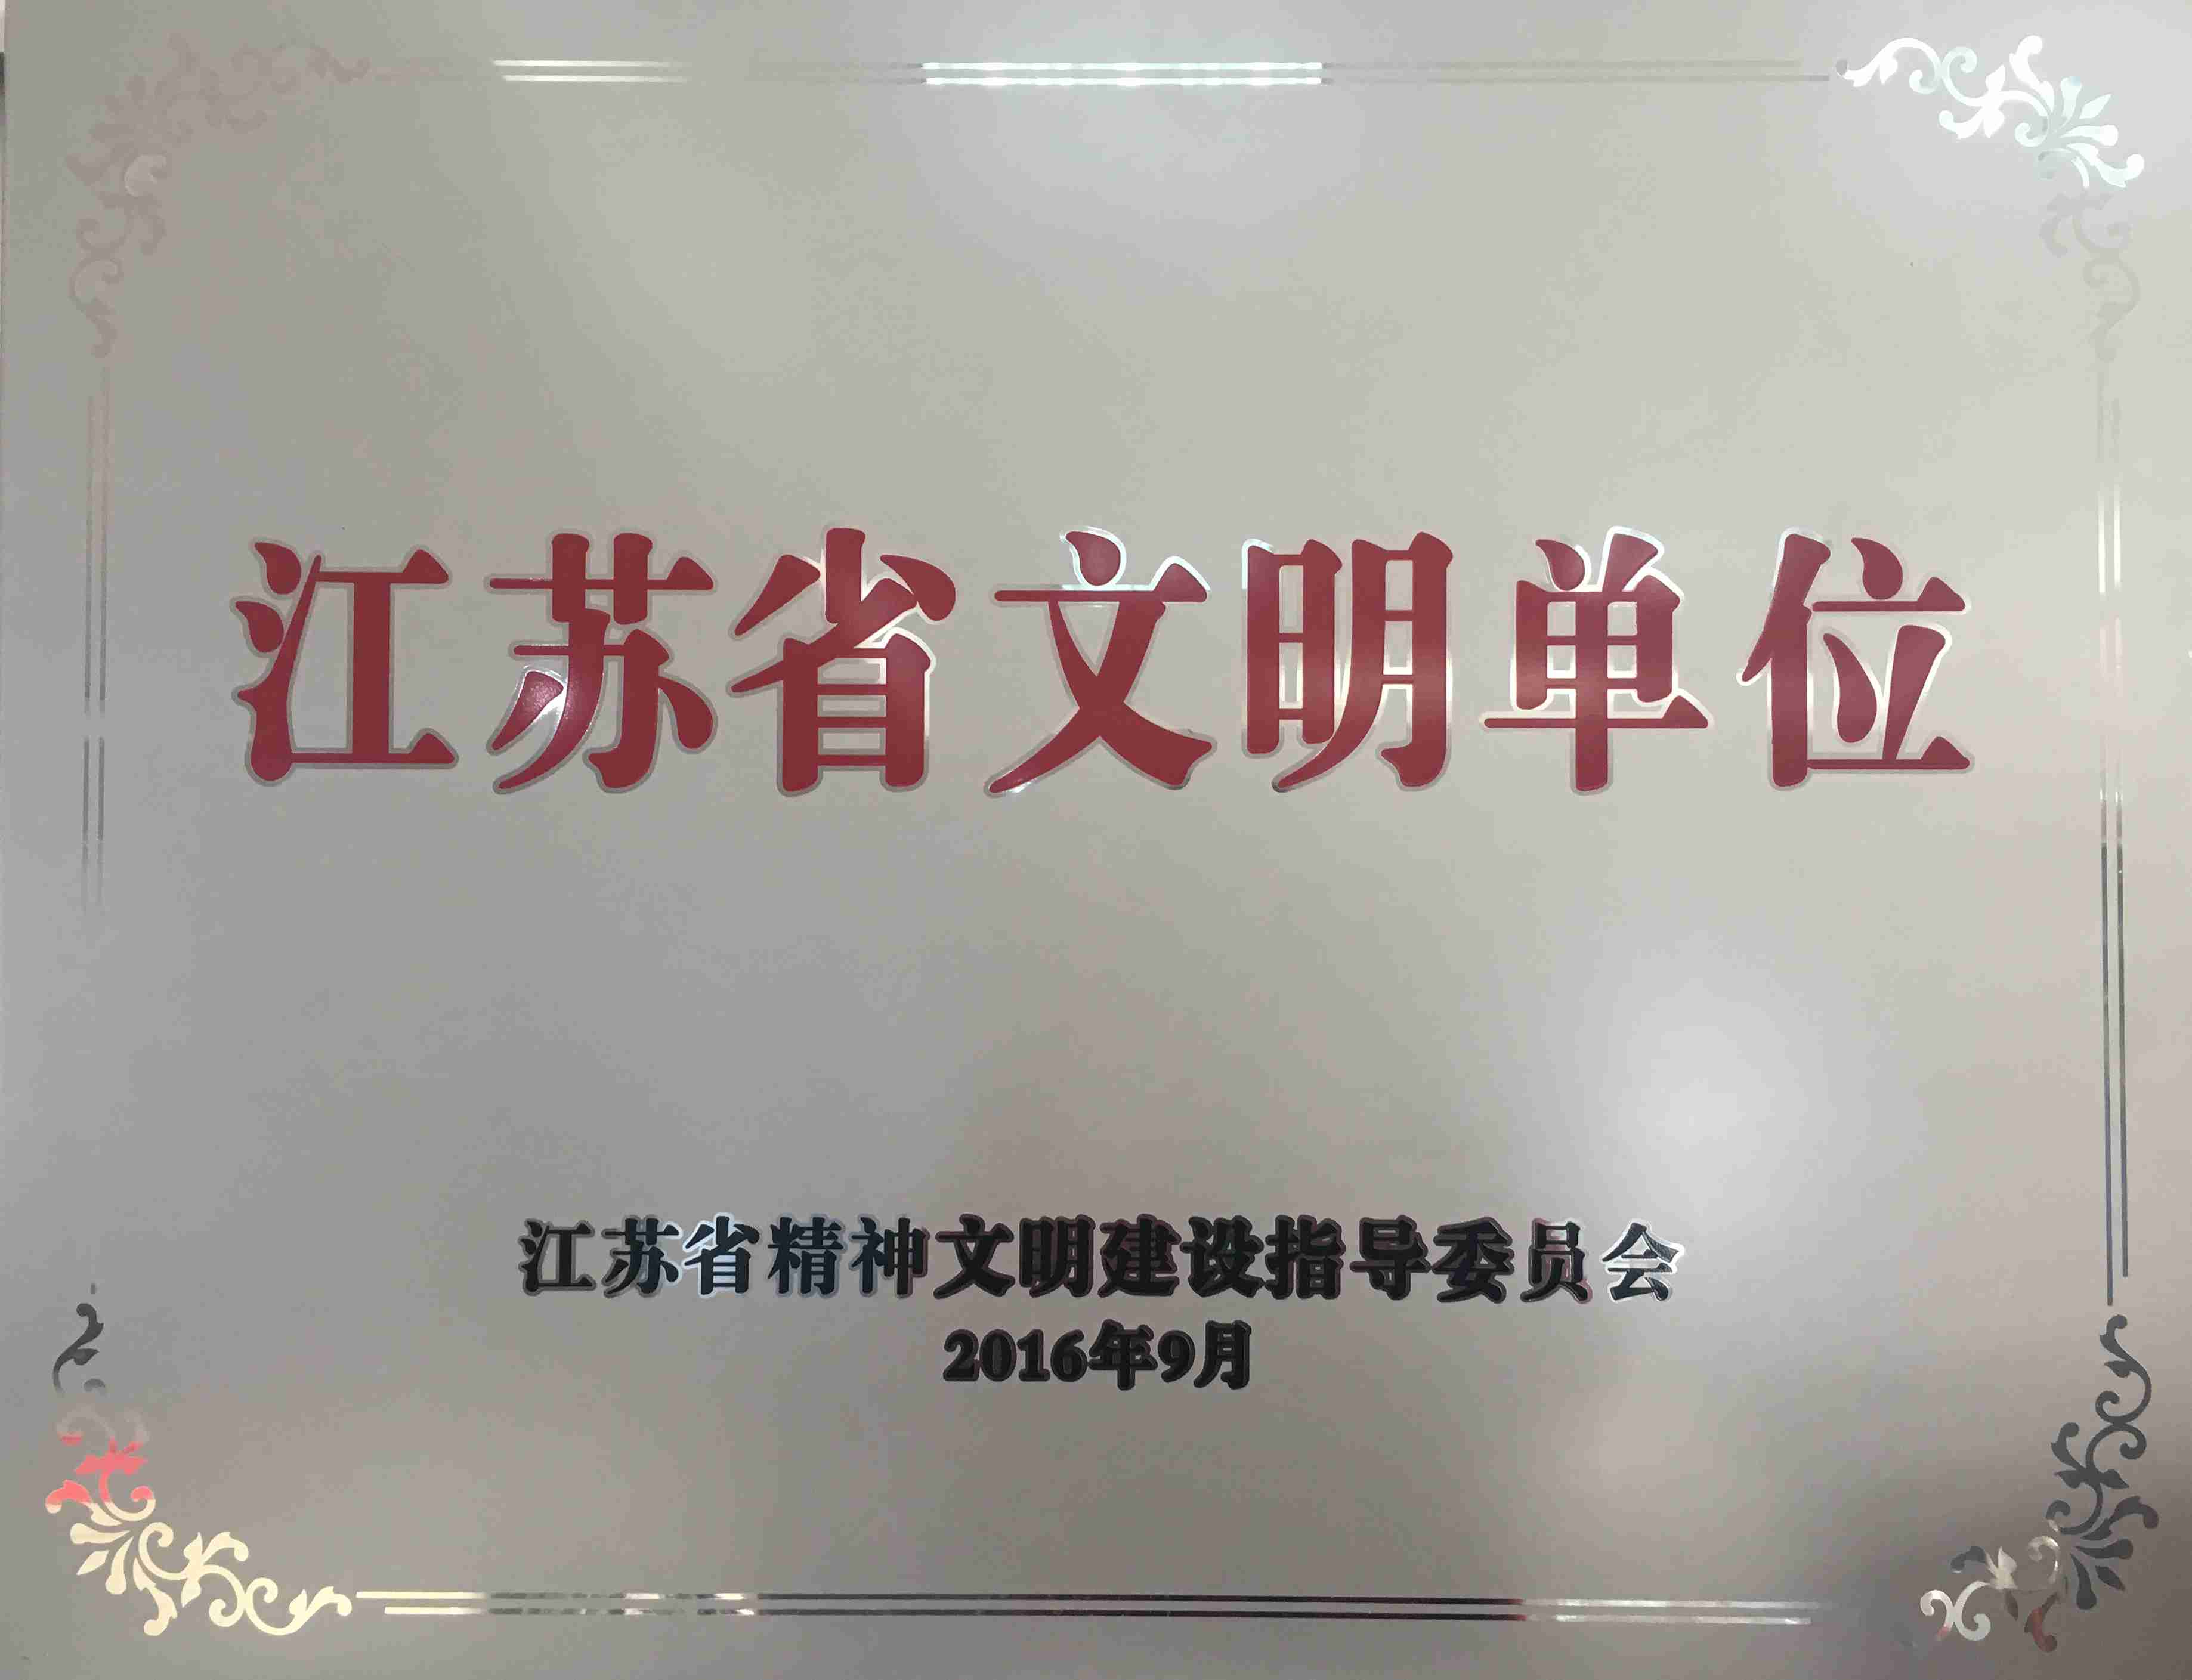 华利达服装集团获“江苏省文明单位”荣誉称号